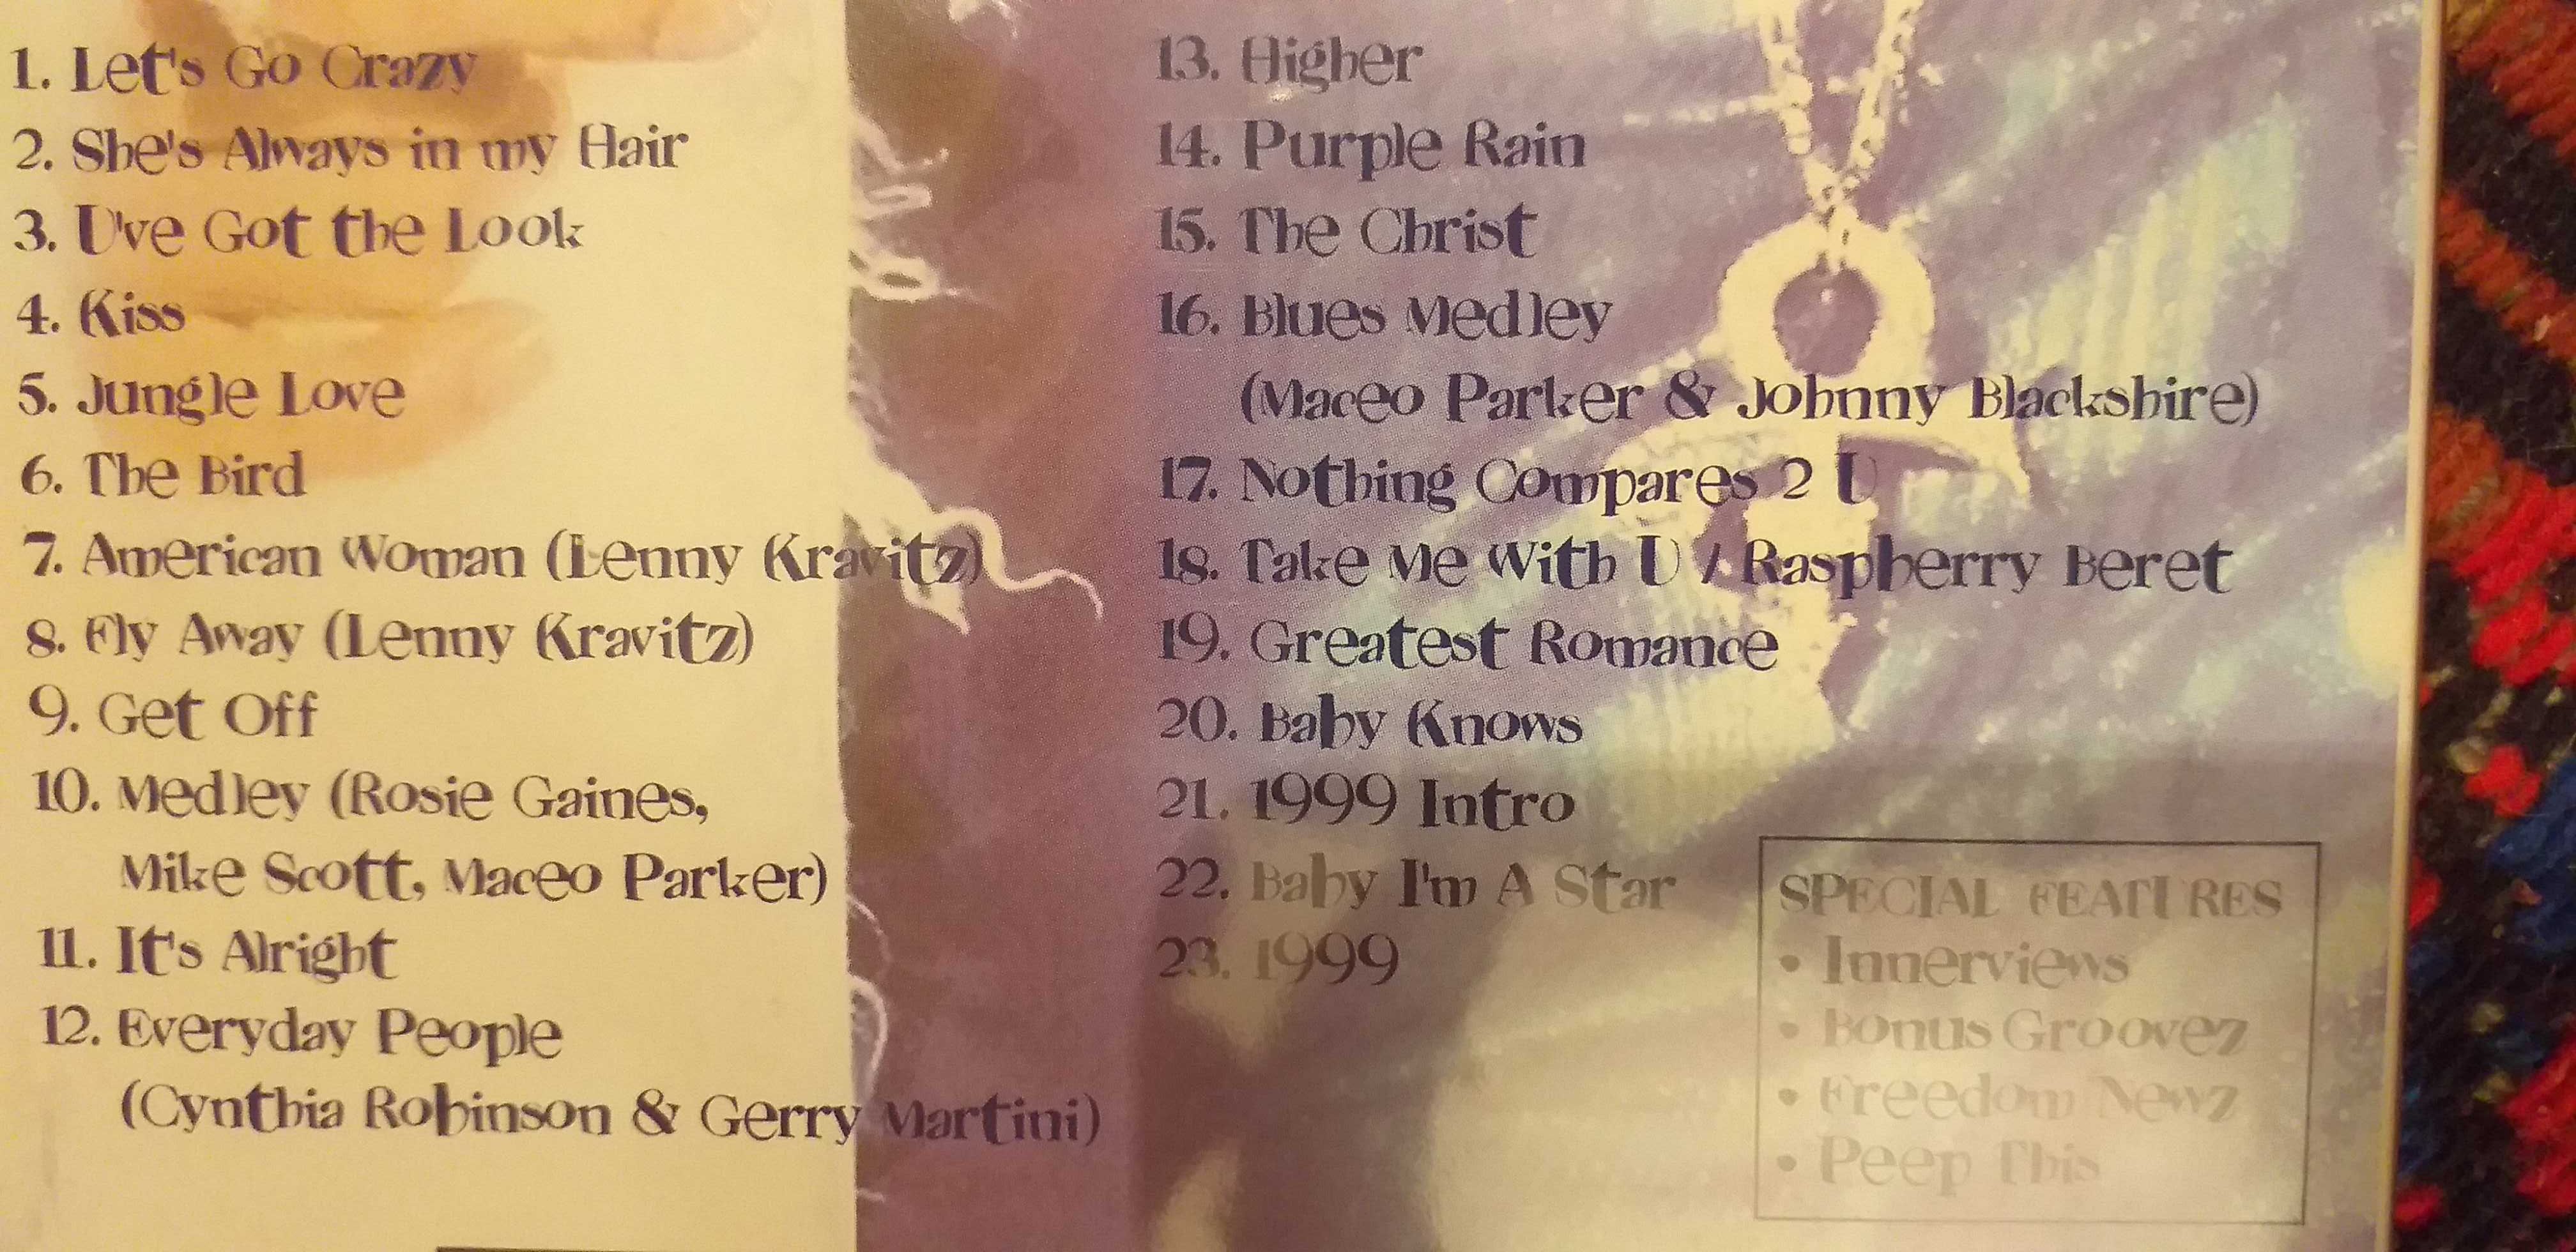 Prince - Rave Un2 the Year 2000 - DVD - selado - portes incluidos